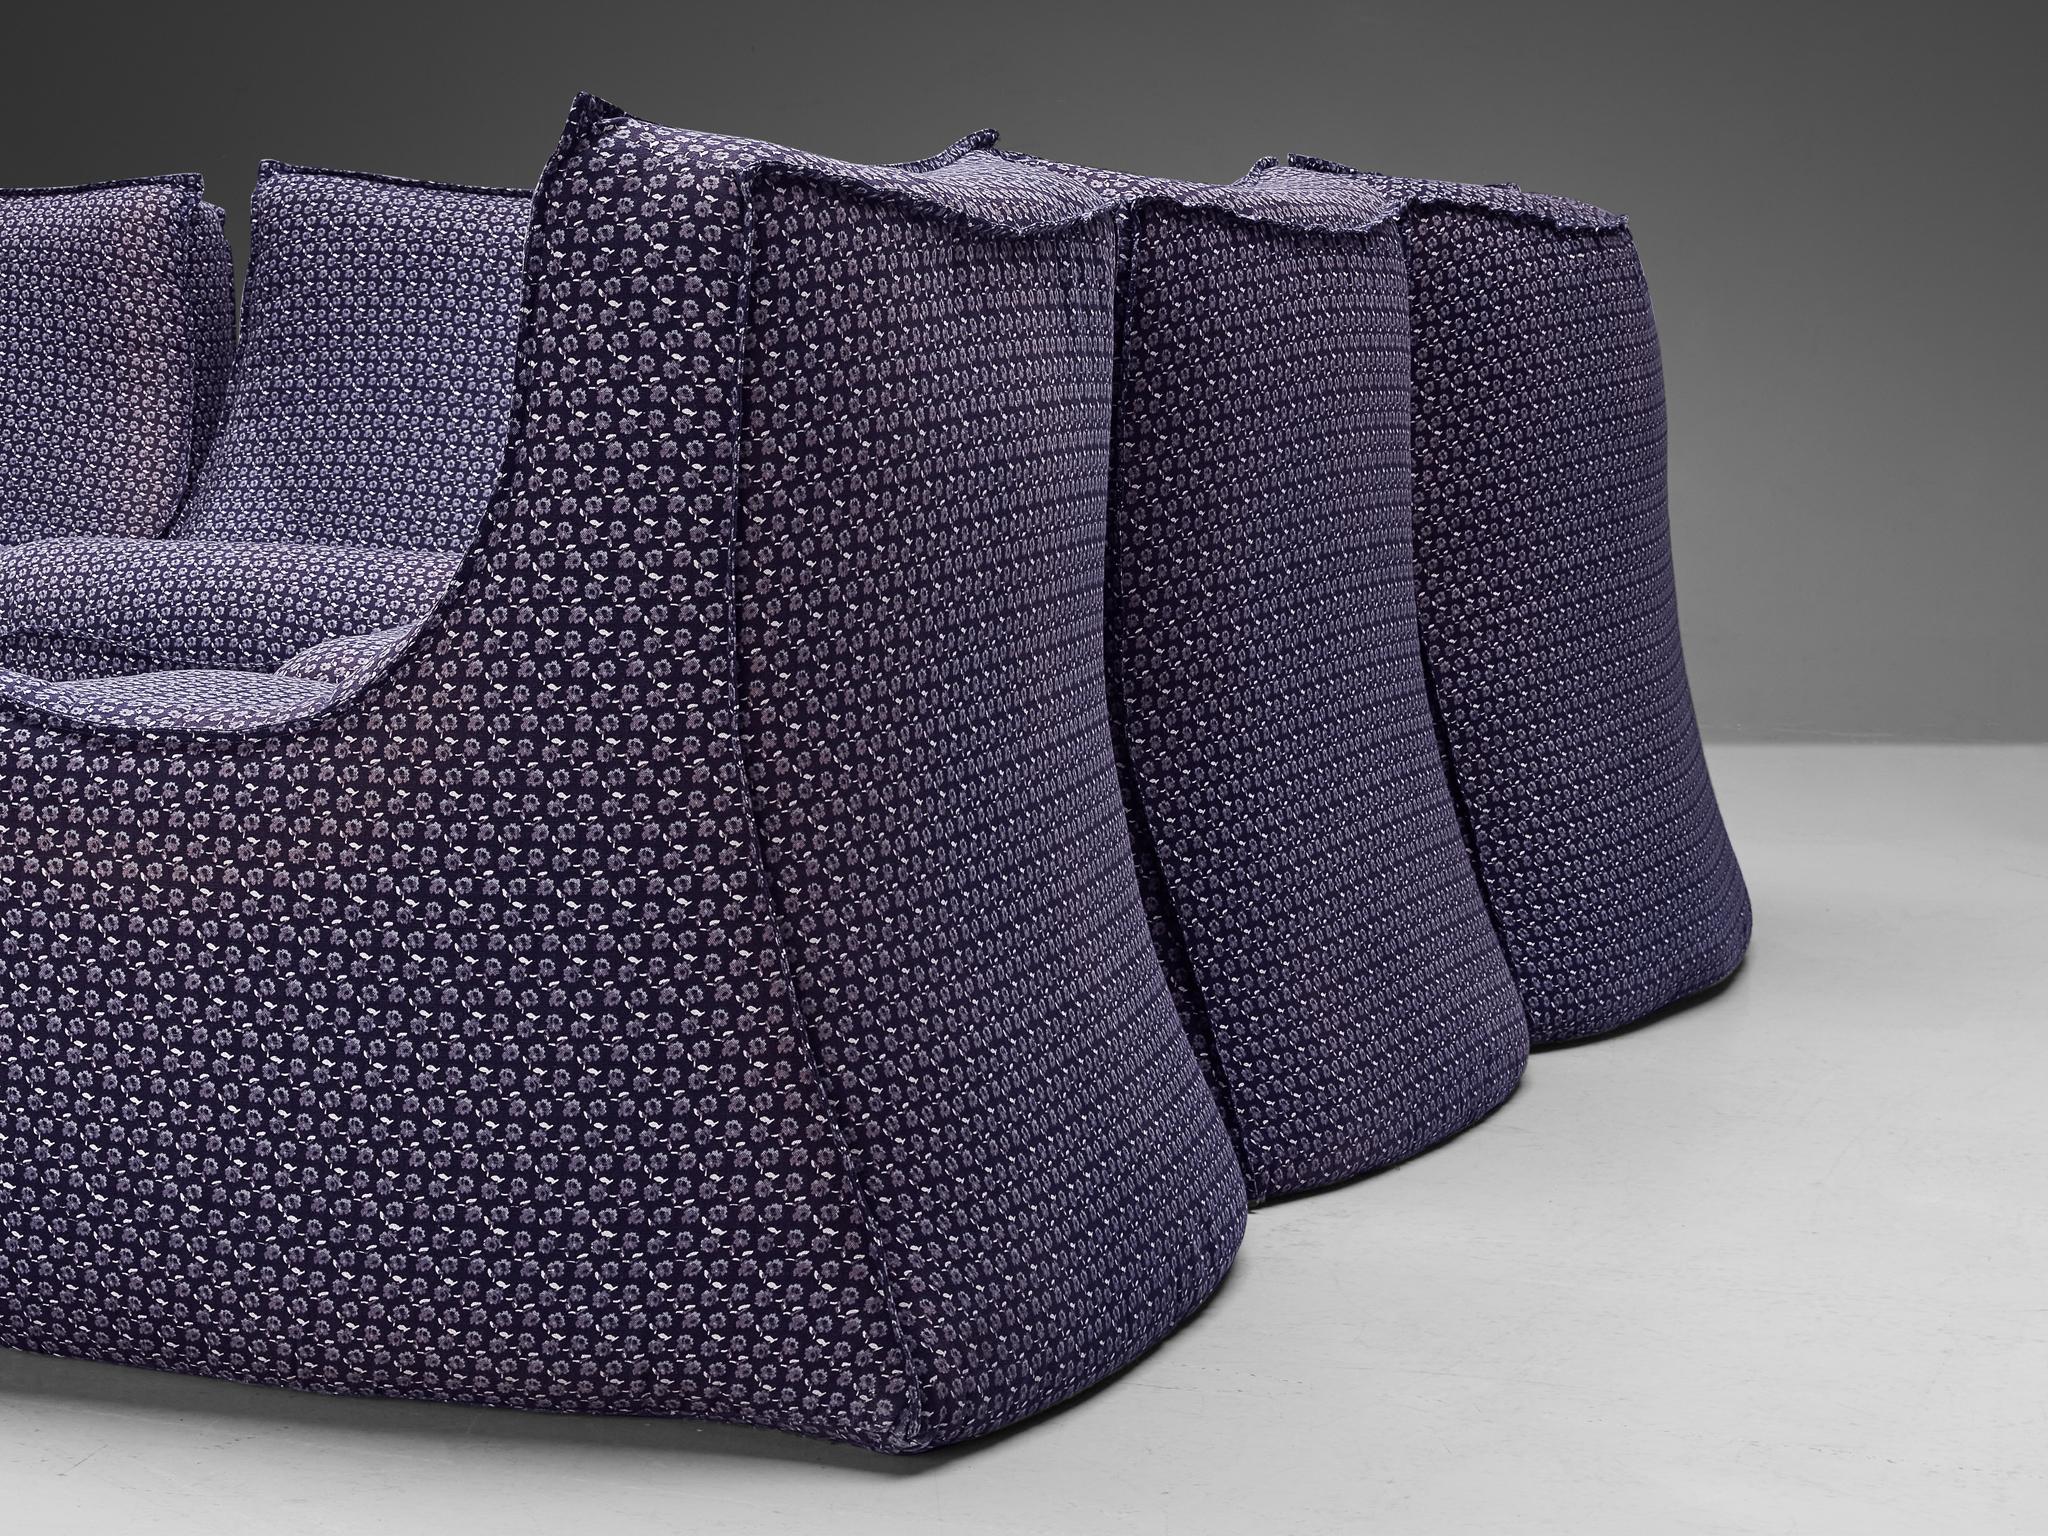 Rare Bernard Govin for Ligne Roset Sectional Sofa in Purple Upholstery For Sale 1